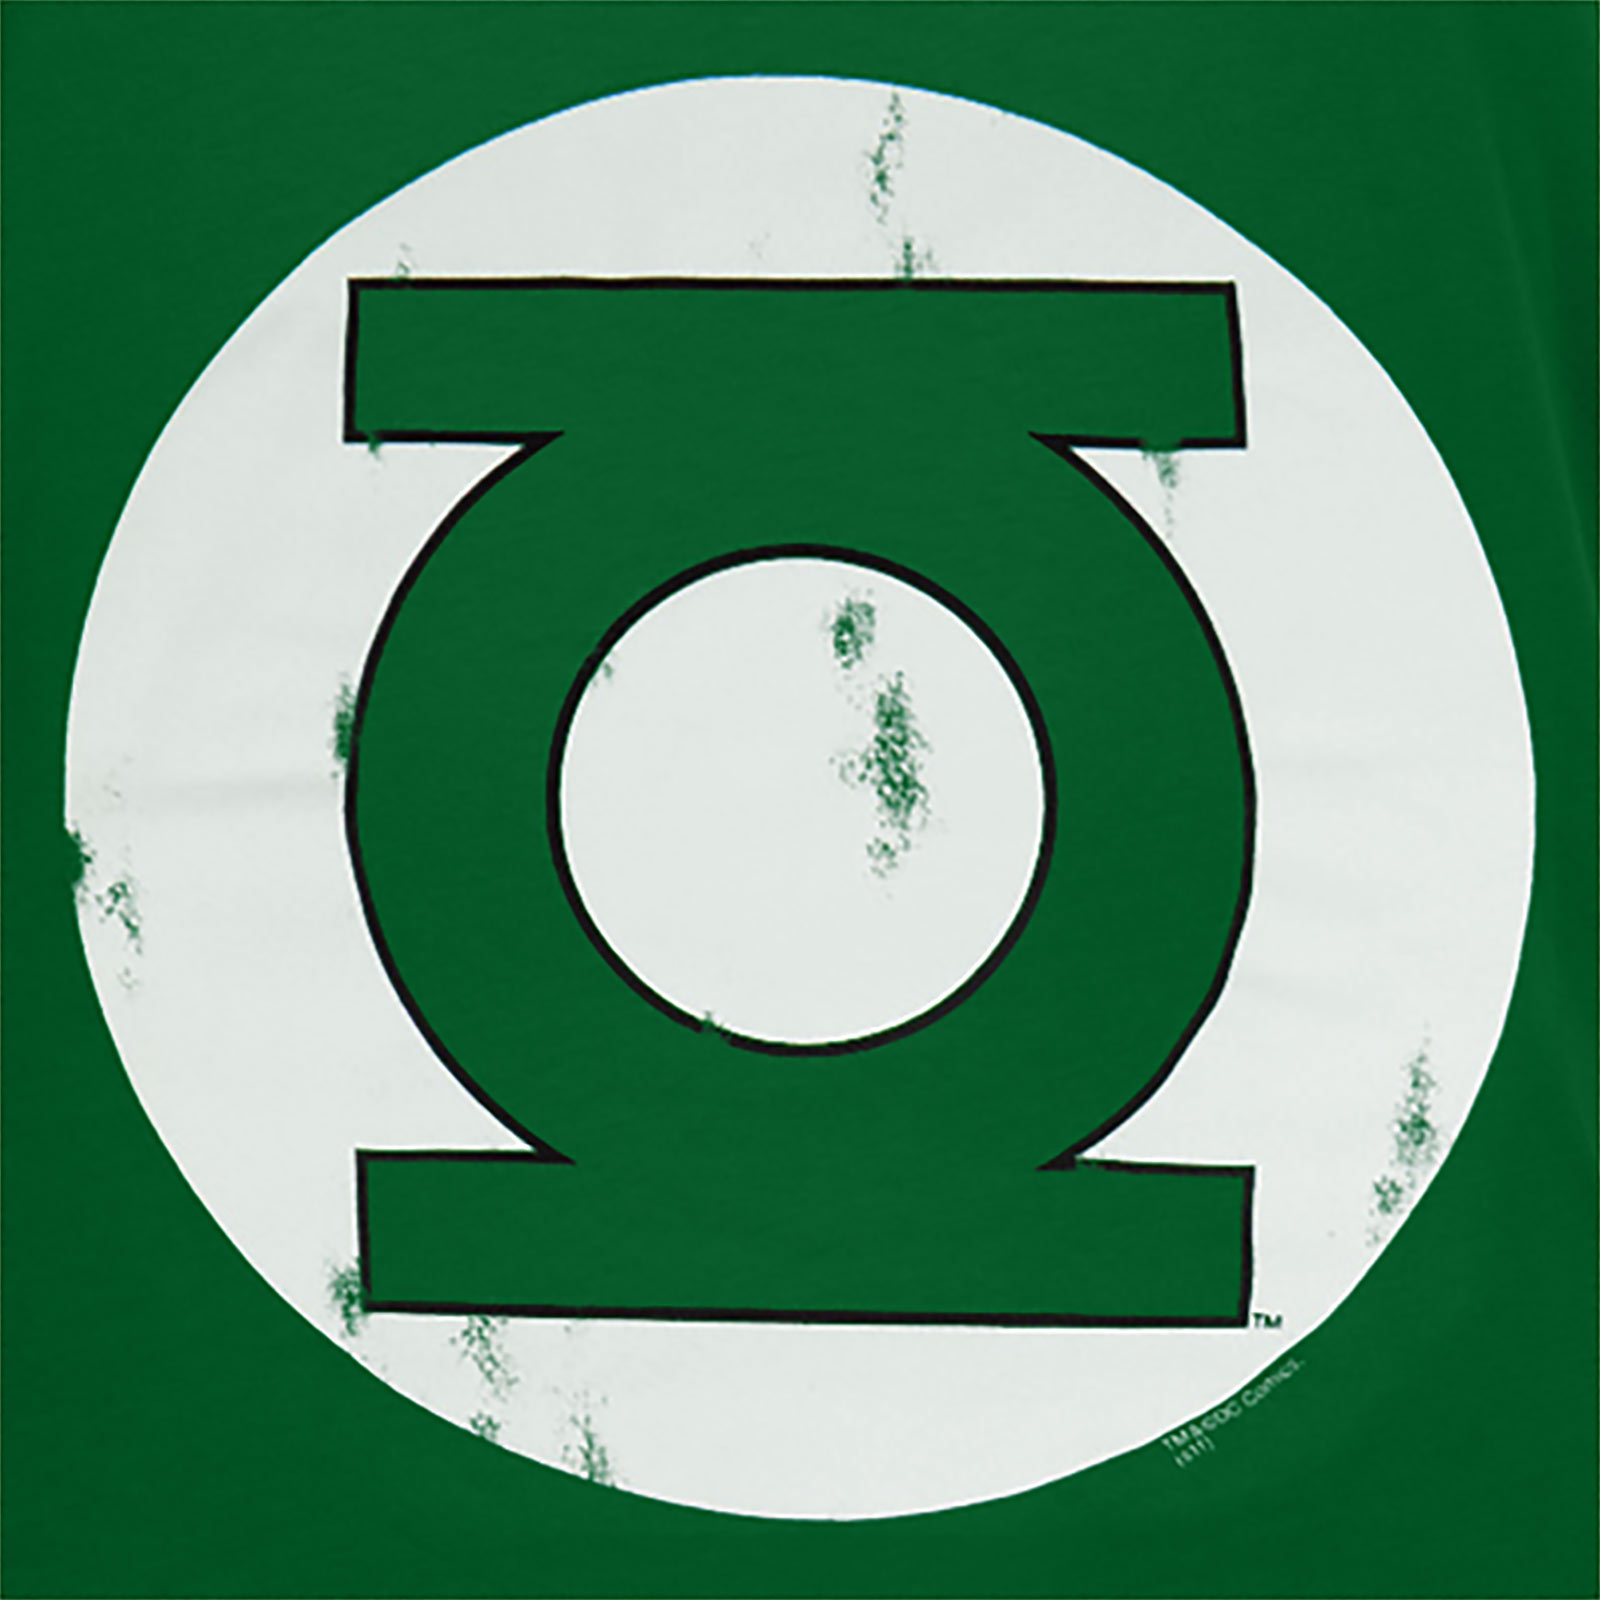 Green Lantern Logo T-Shirt - dunkel